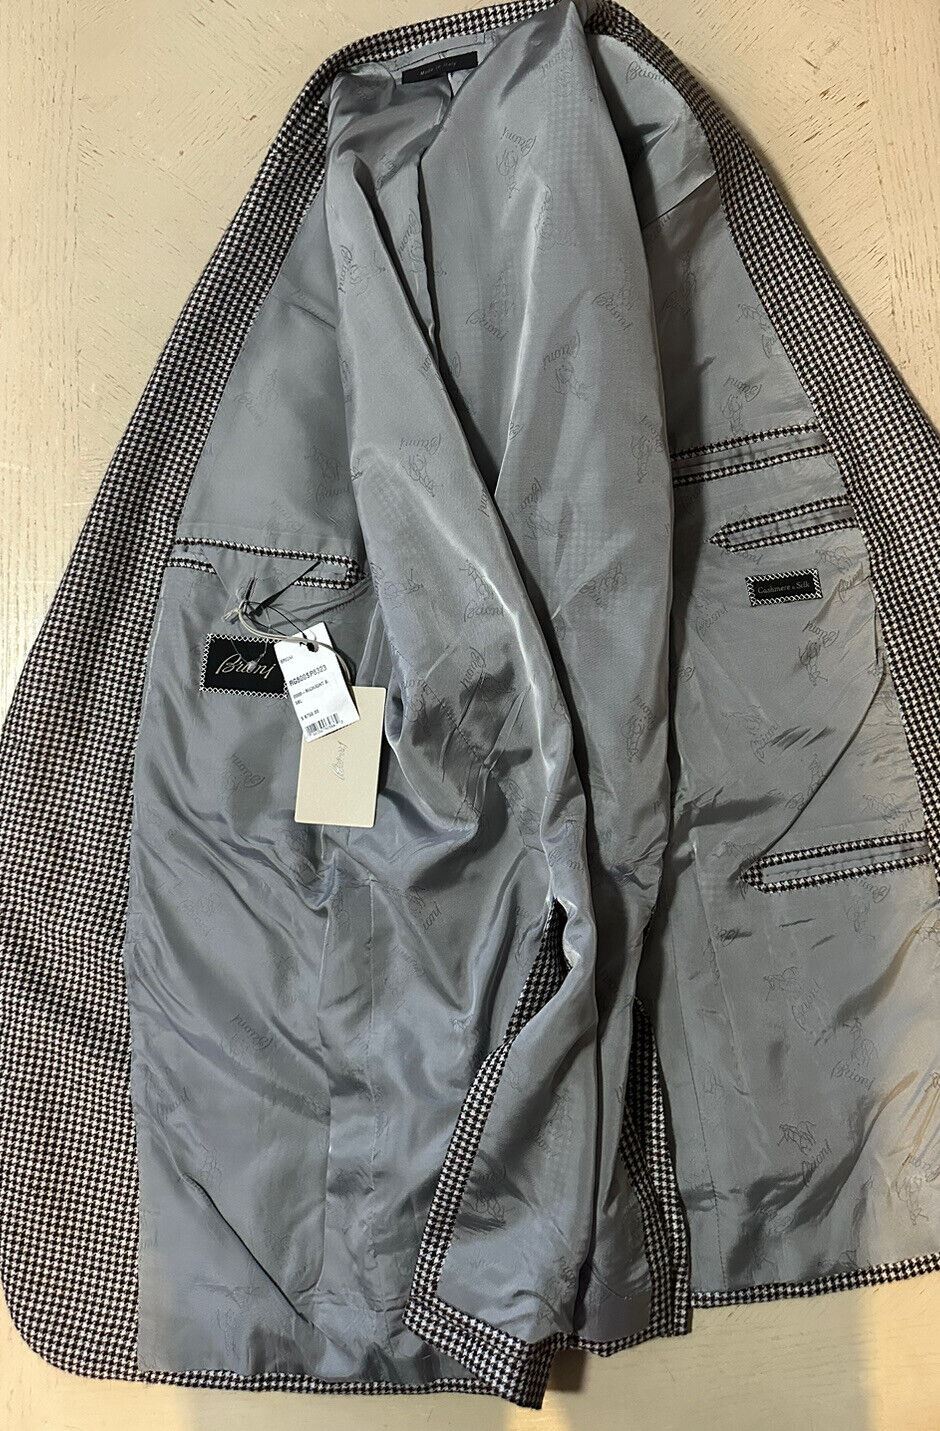 NWT $6750 Мужской спортивный пиджак Brioni из кашемира/шелка, средне-коричневый, 46L, США/56L, ЕС